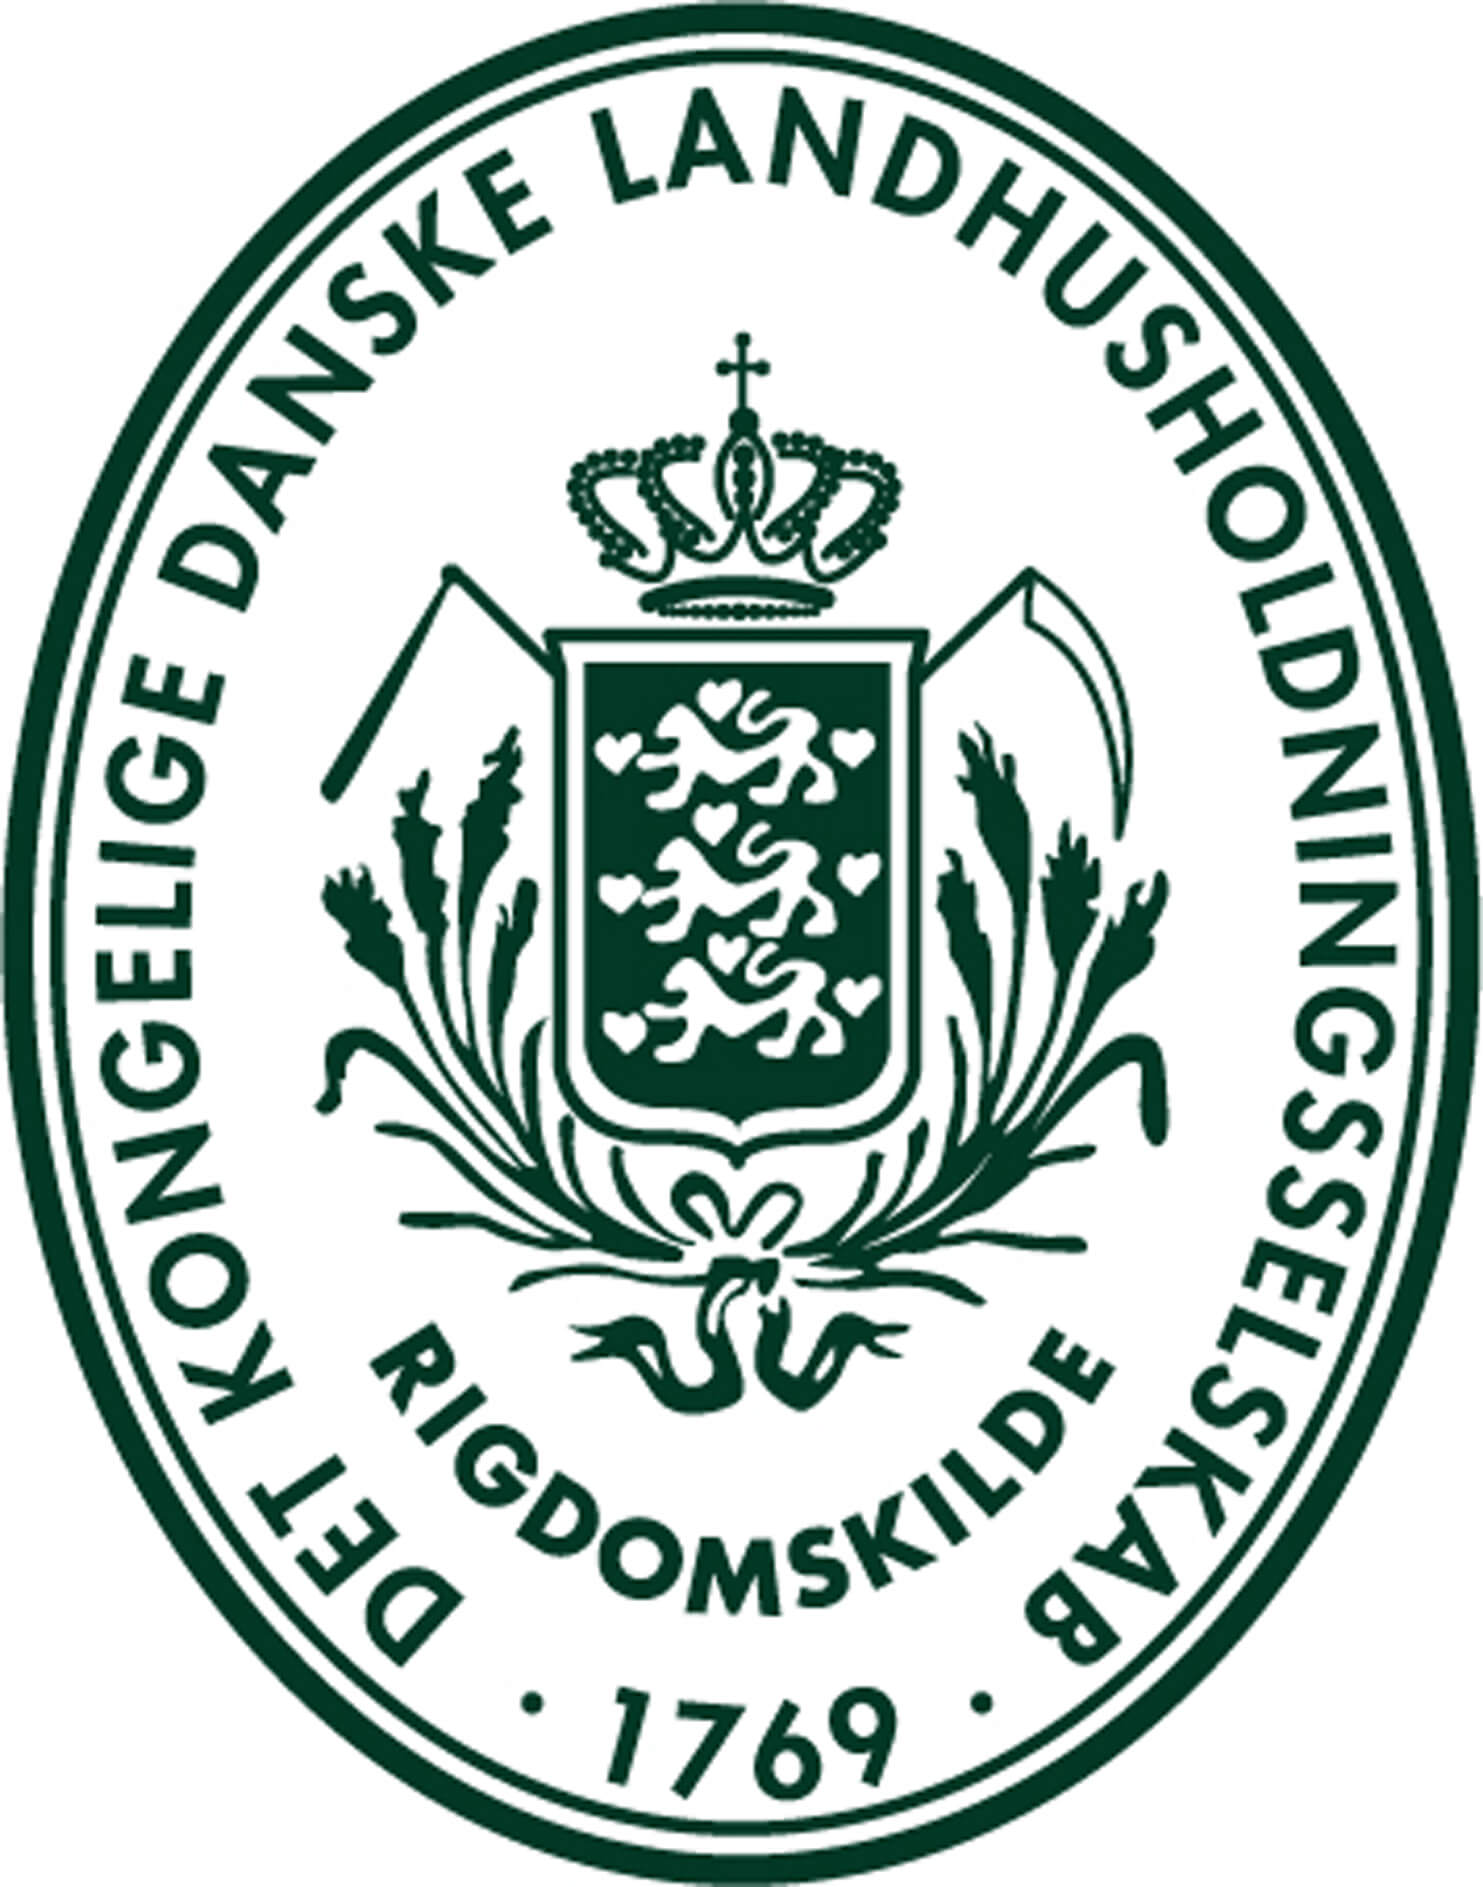 LHS logo